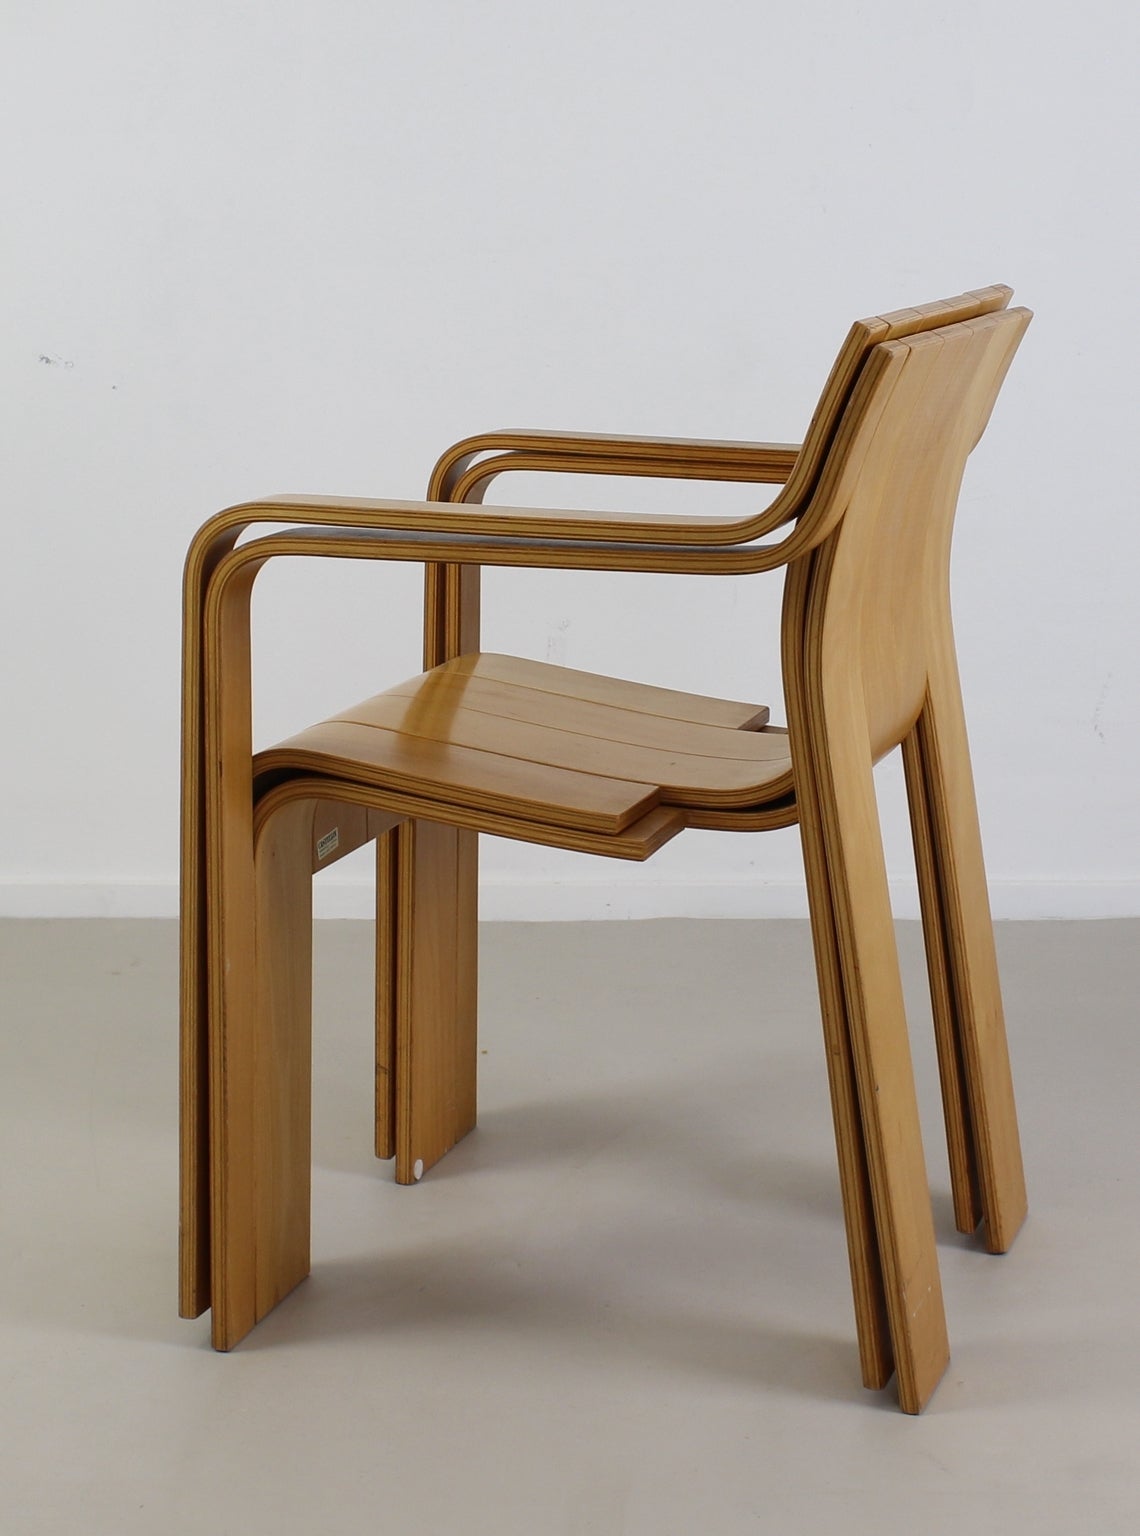 Post-Modern Dutch Design Strip Chairs by Gijs Bakker for Castelijn Holland